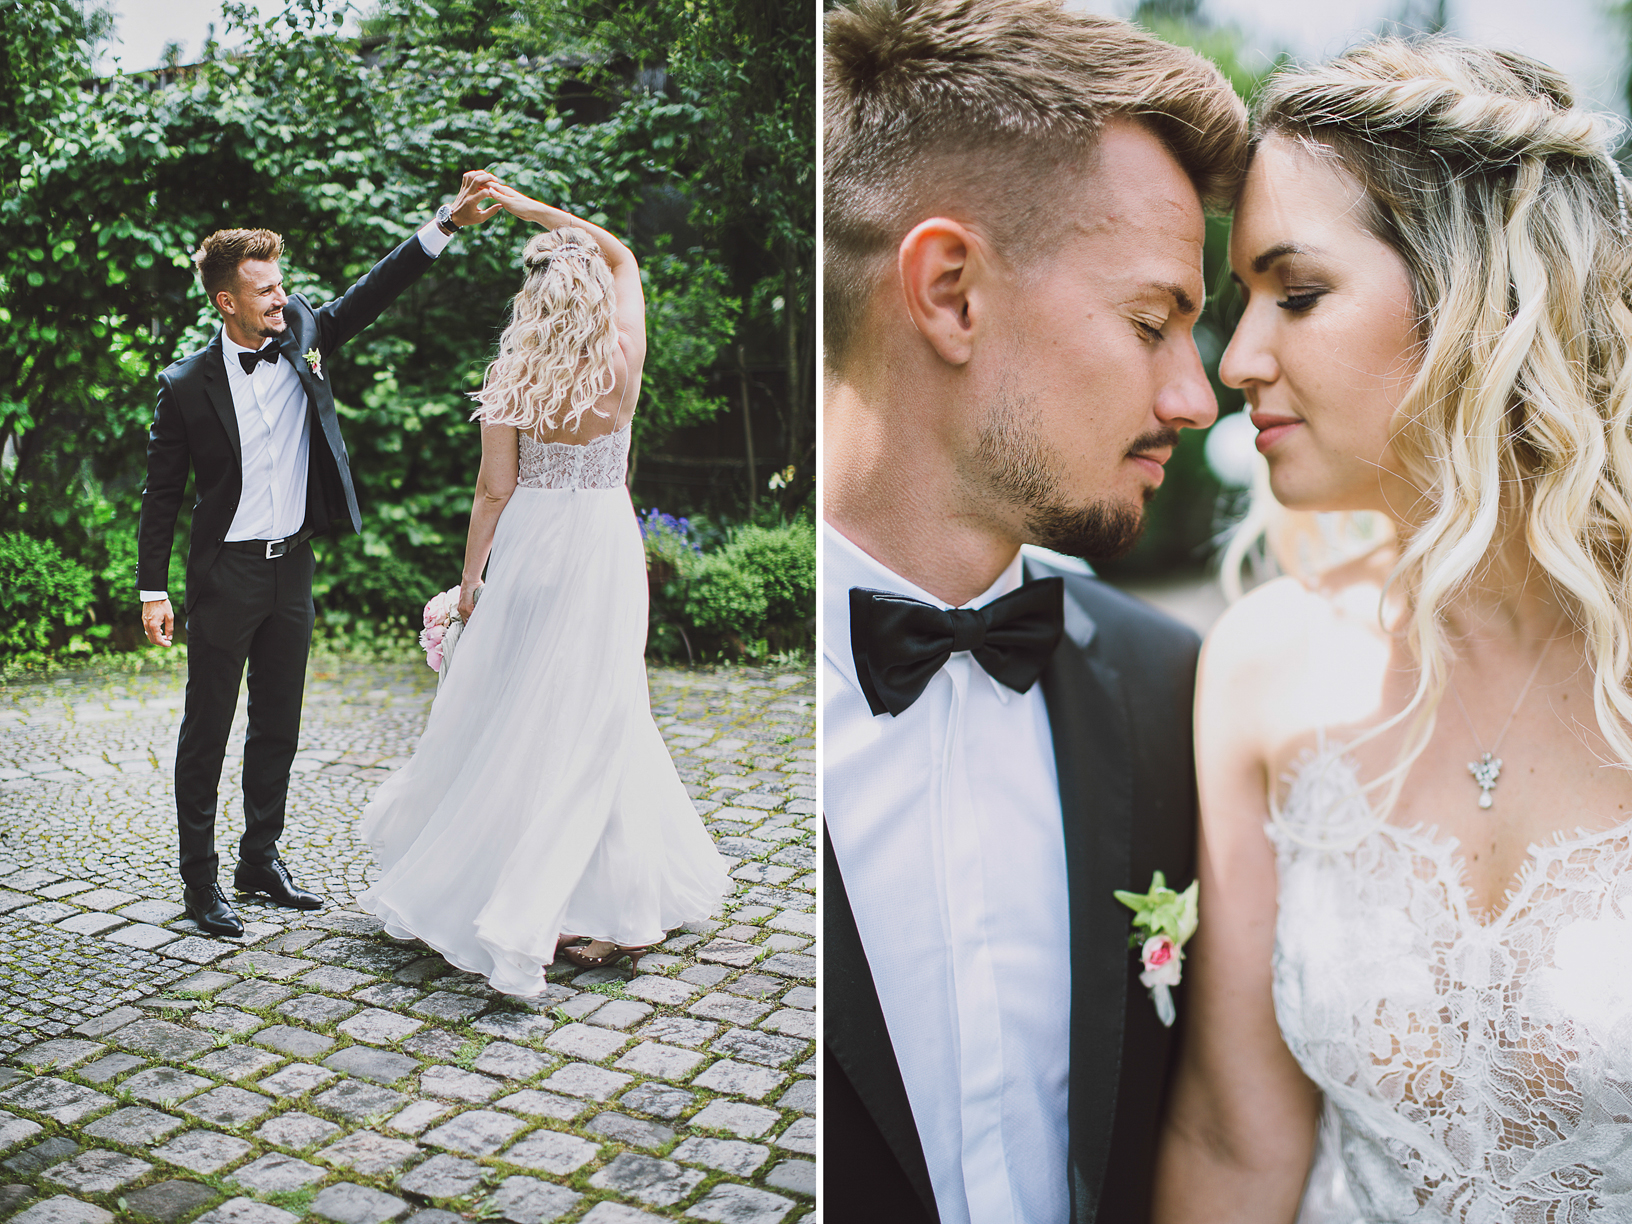 Die Hochzeit von Ronny und Patrizia Philp in der Alten Gärtnerei in Taufkirchen mit einem Brautkleid von Kaviar Gauche